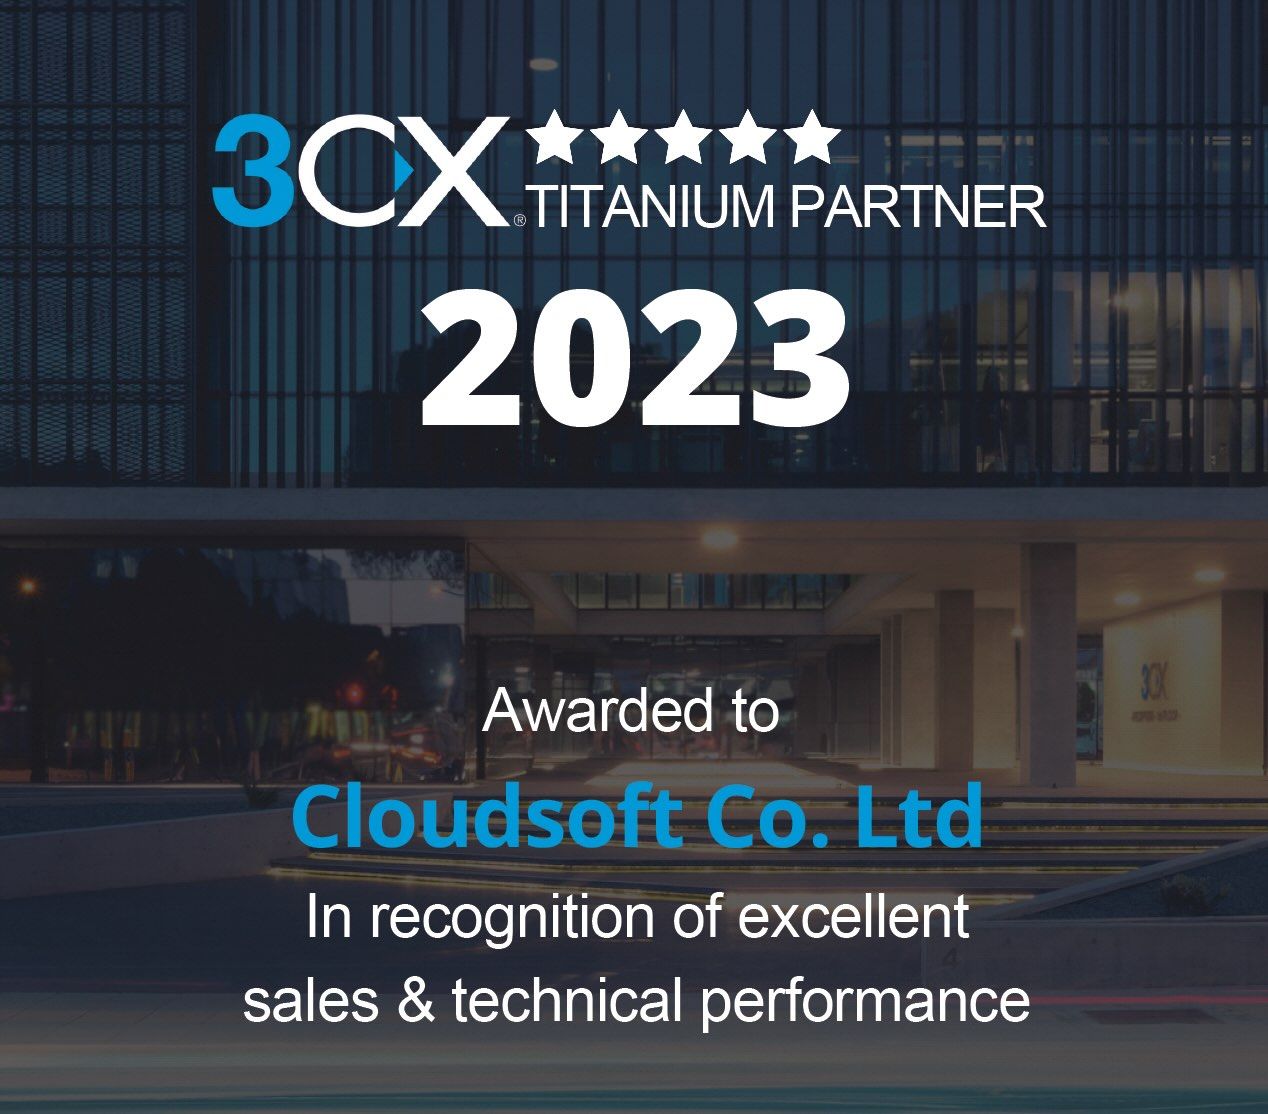 Cloudsoft 3CX Titanium Partner in Thailand